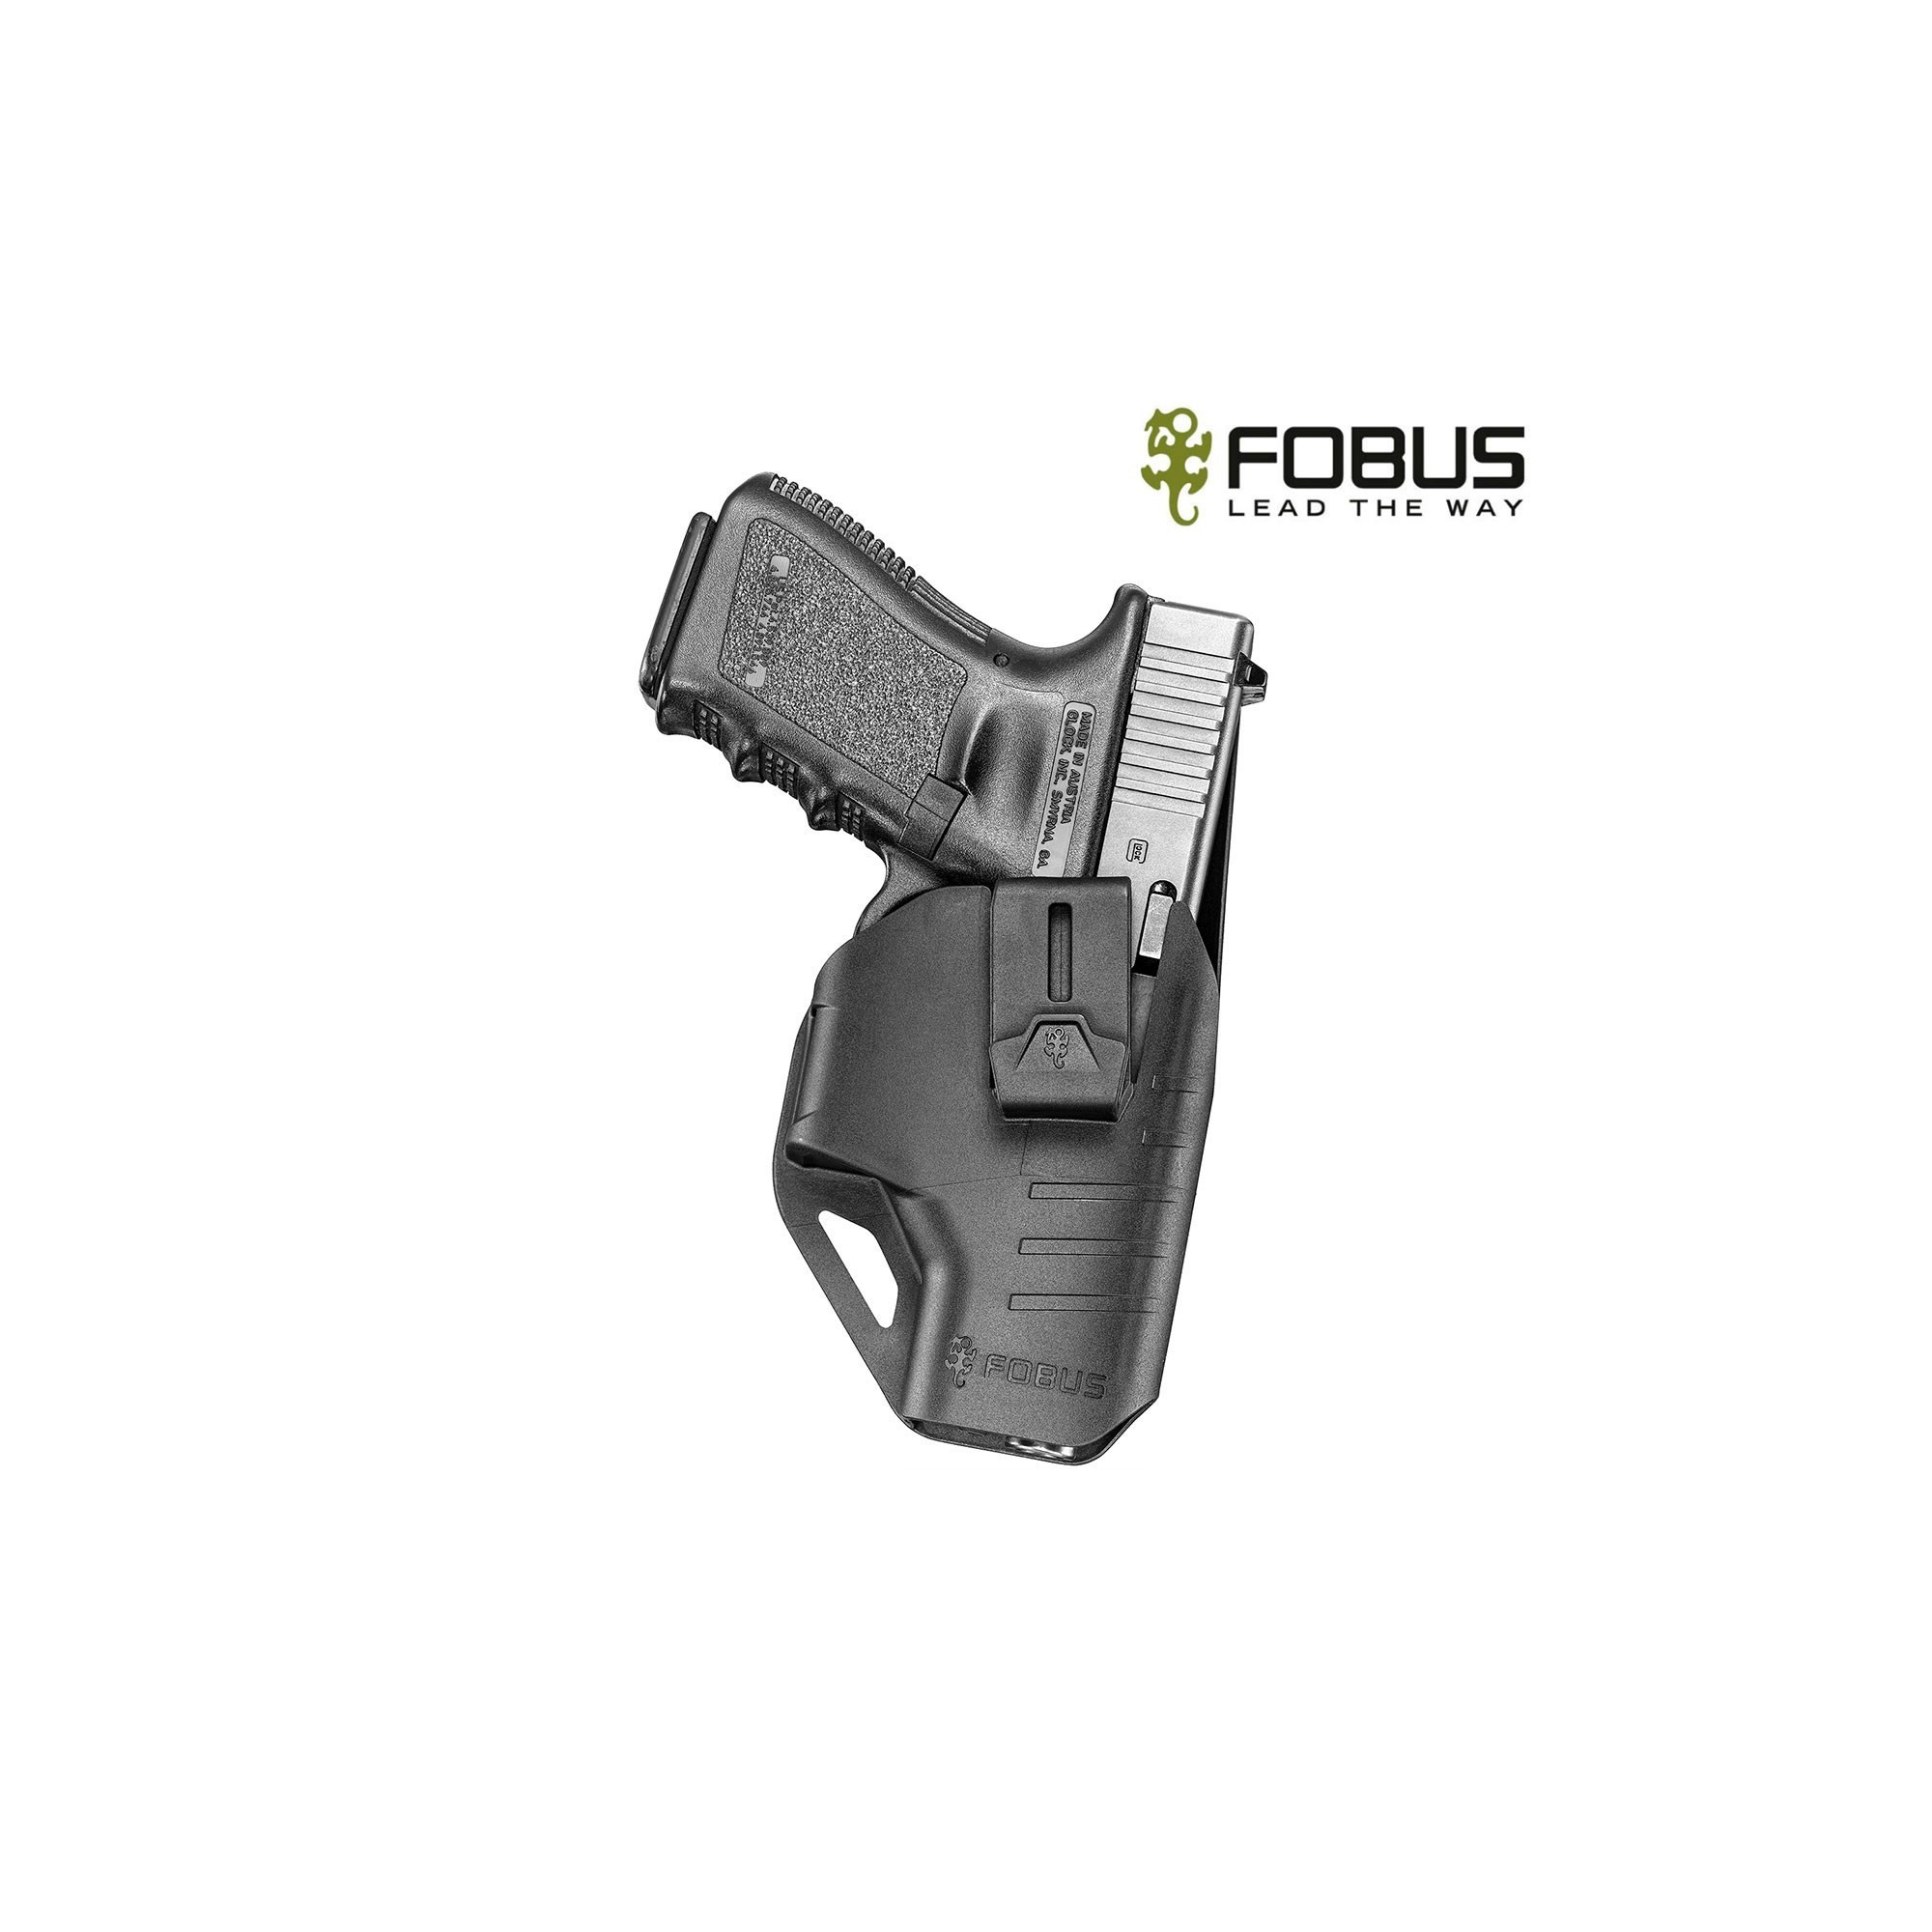 Holster port discret pour Glock plusieurs modèles